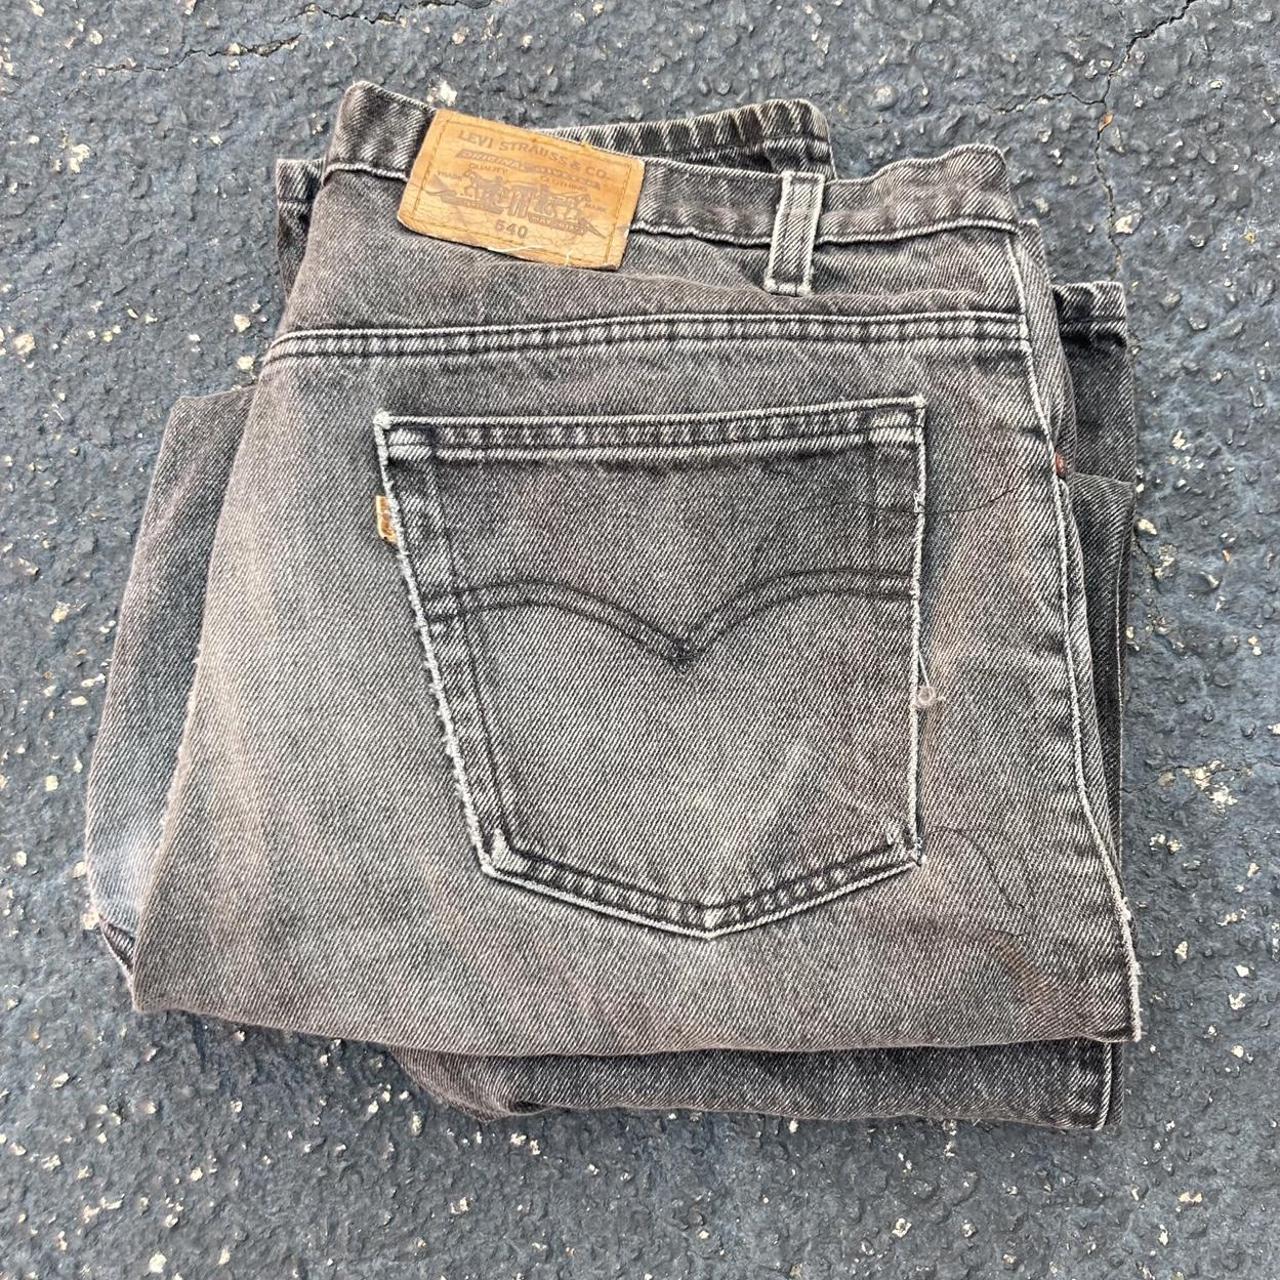 Baggy vintage 90s Levi’s 540 black jeans Men’s size... - Depop